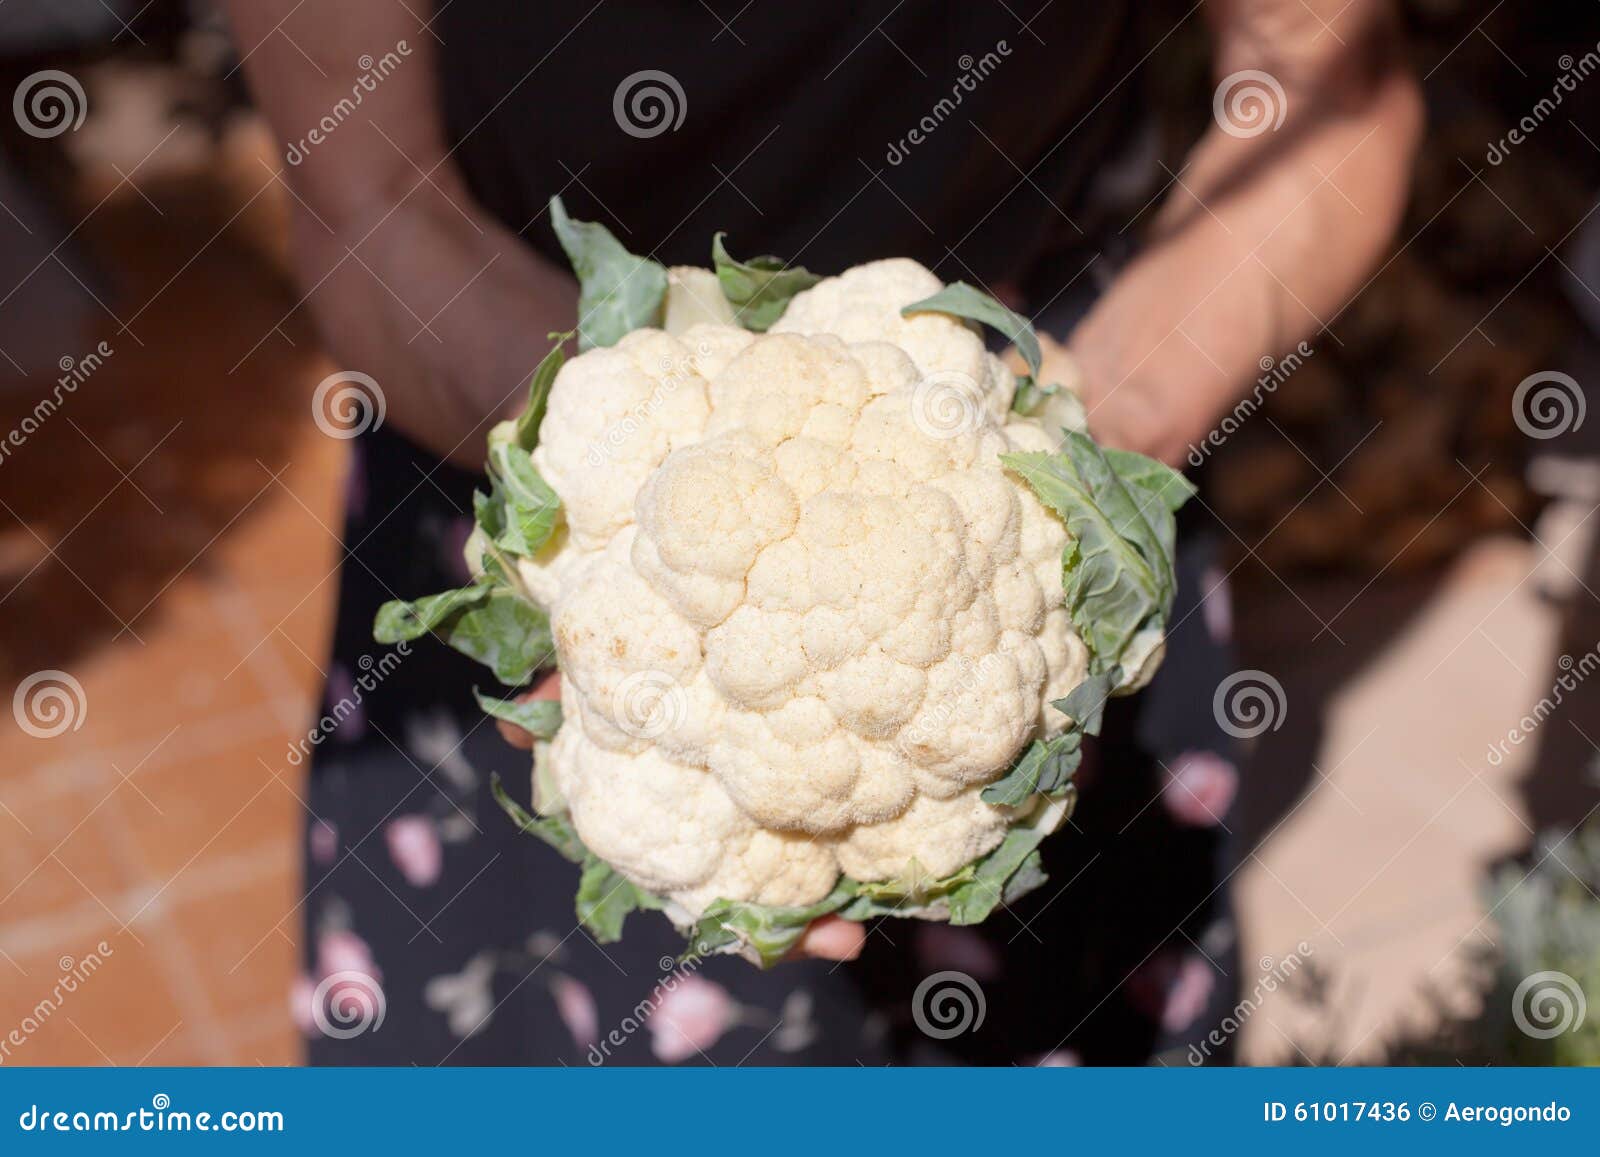 cauliflower in hands